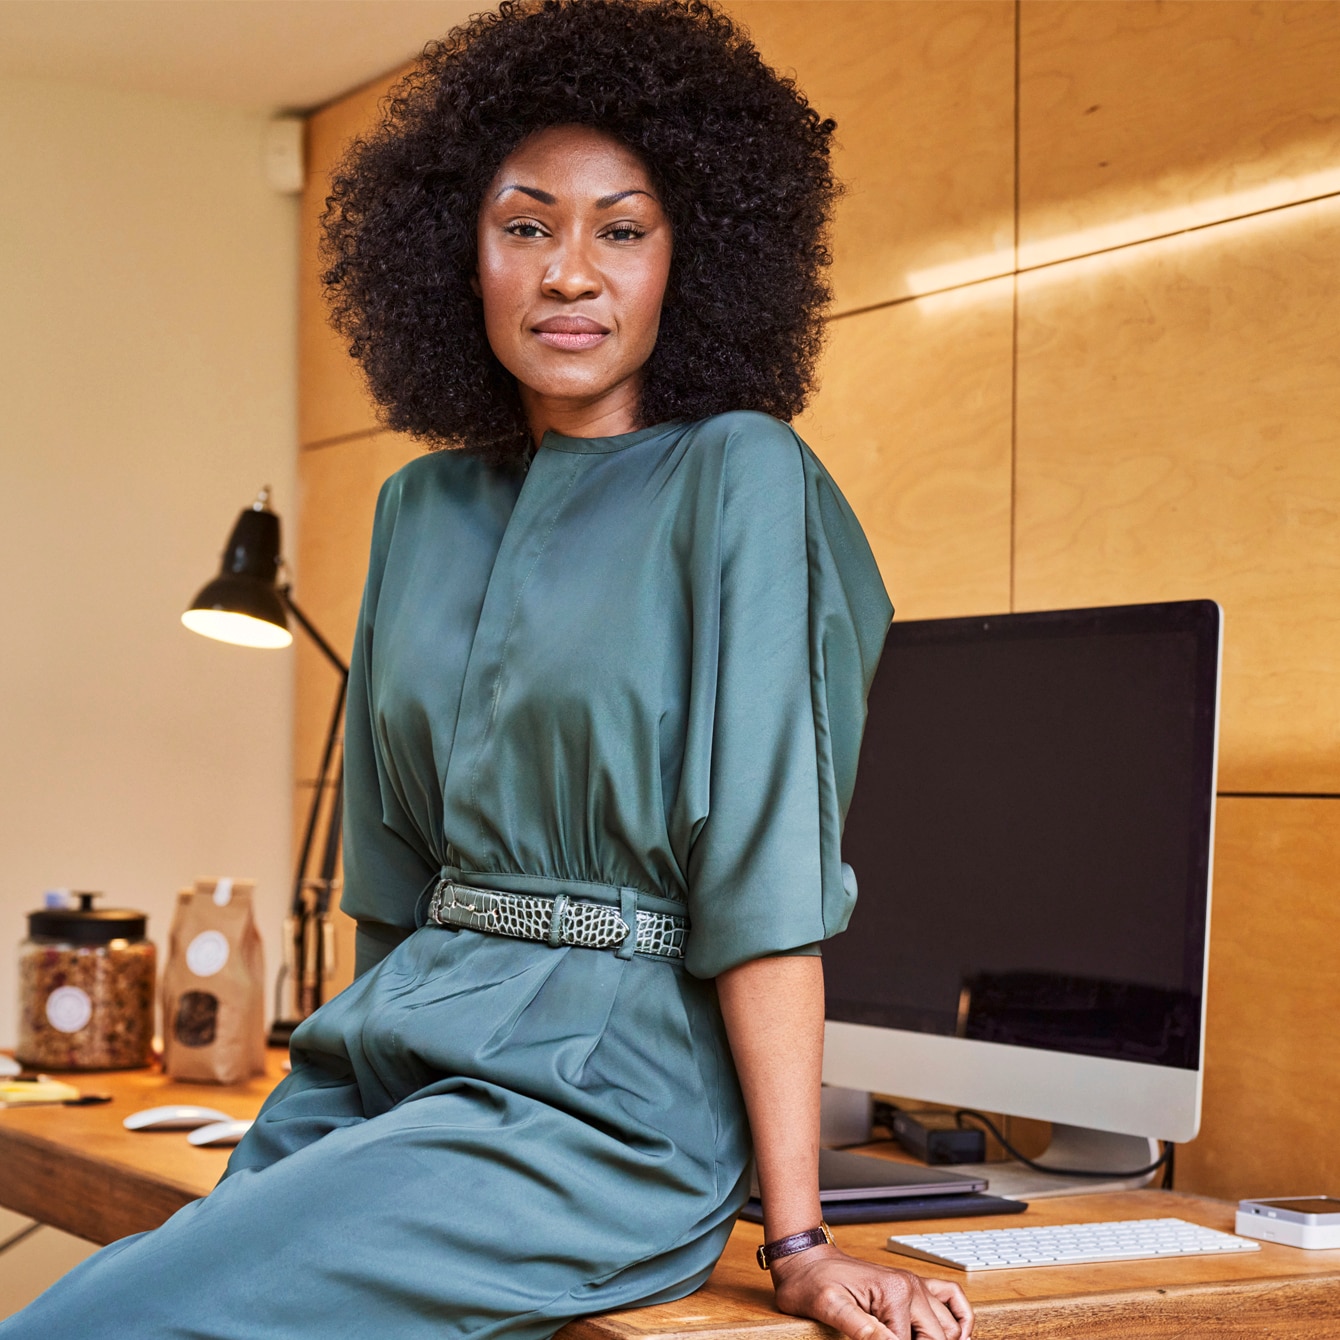 Nuestra investigación: la discriminación por el cabello afroamericano en el lugar de trabajo